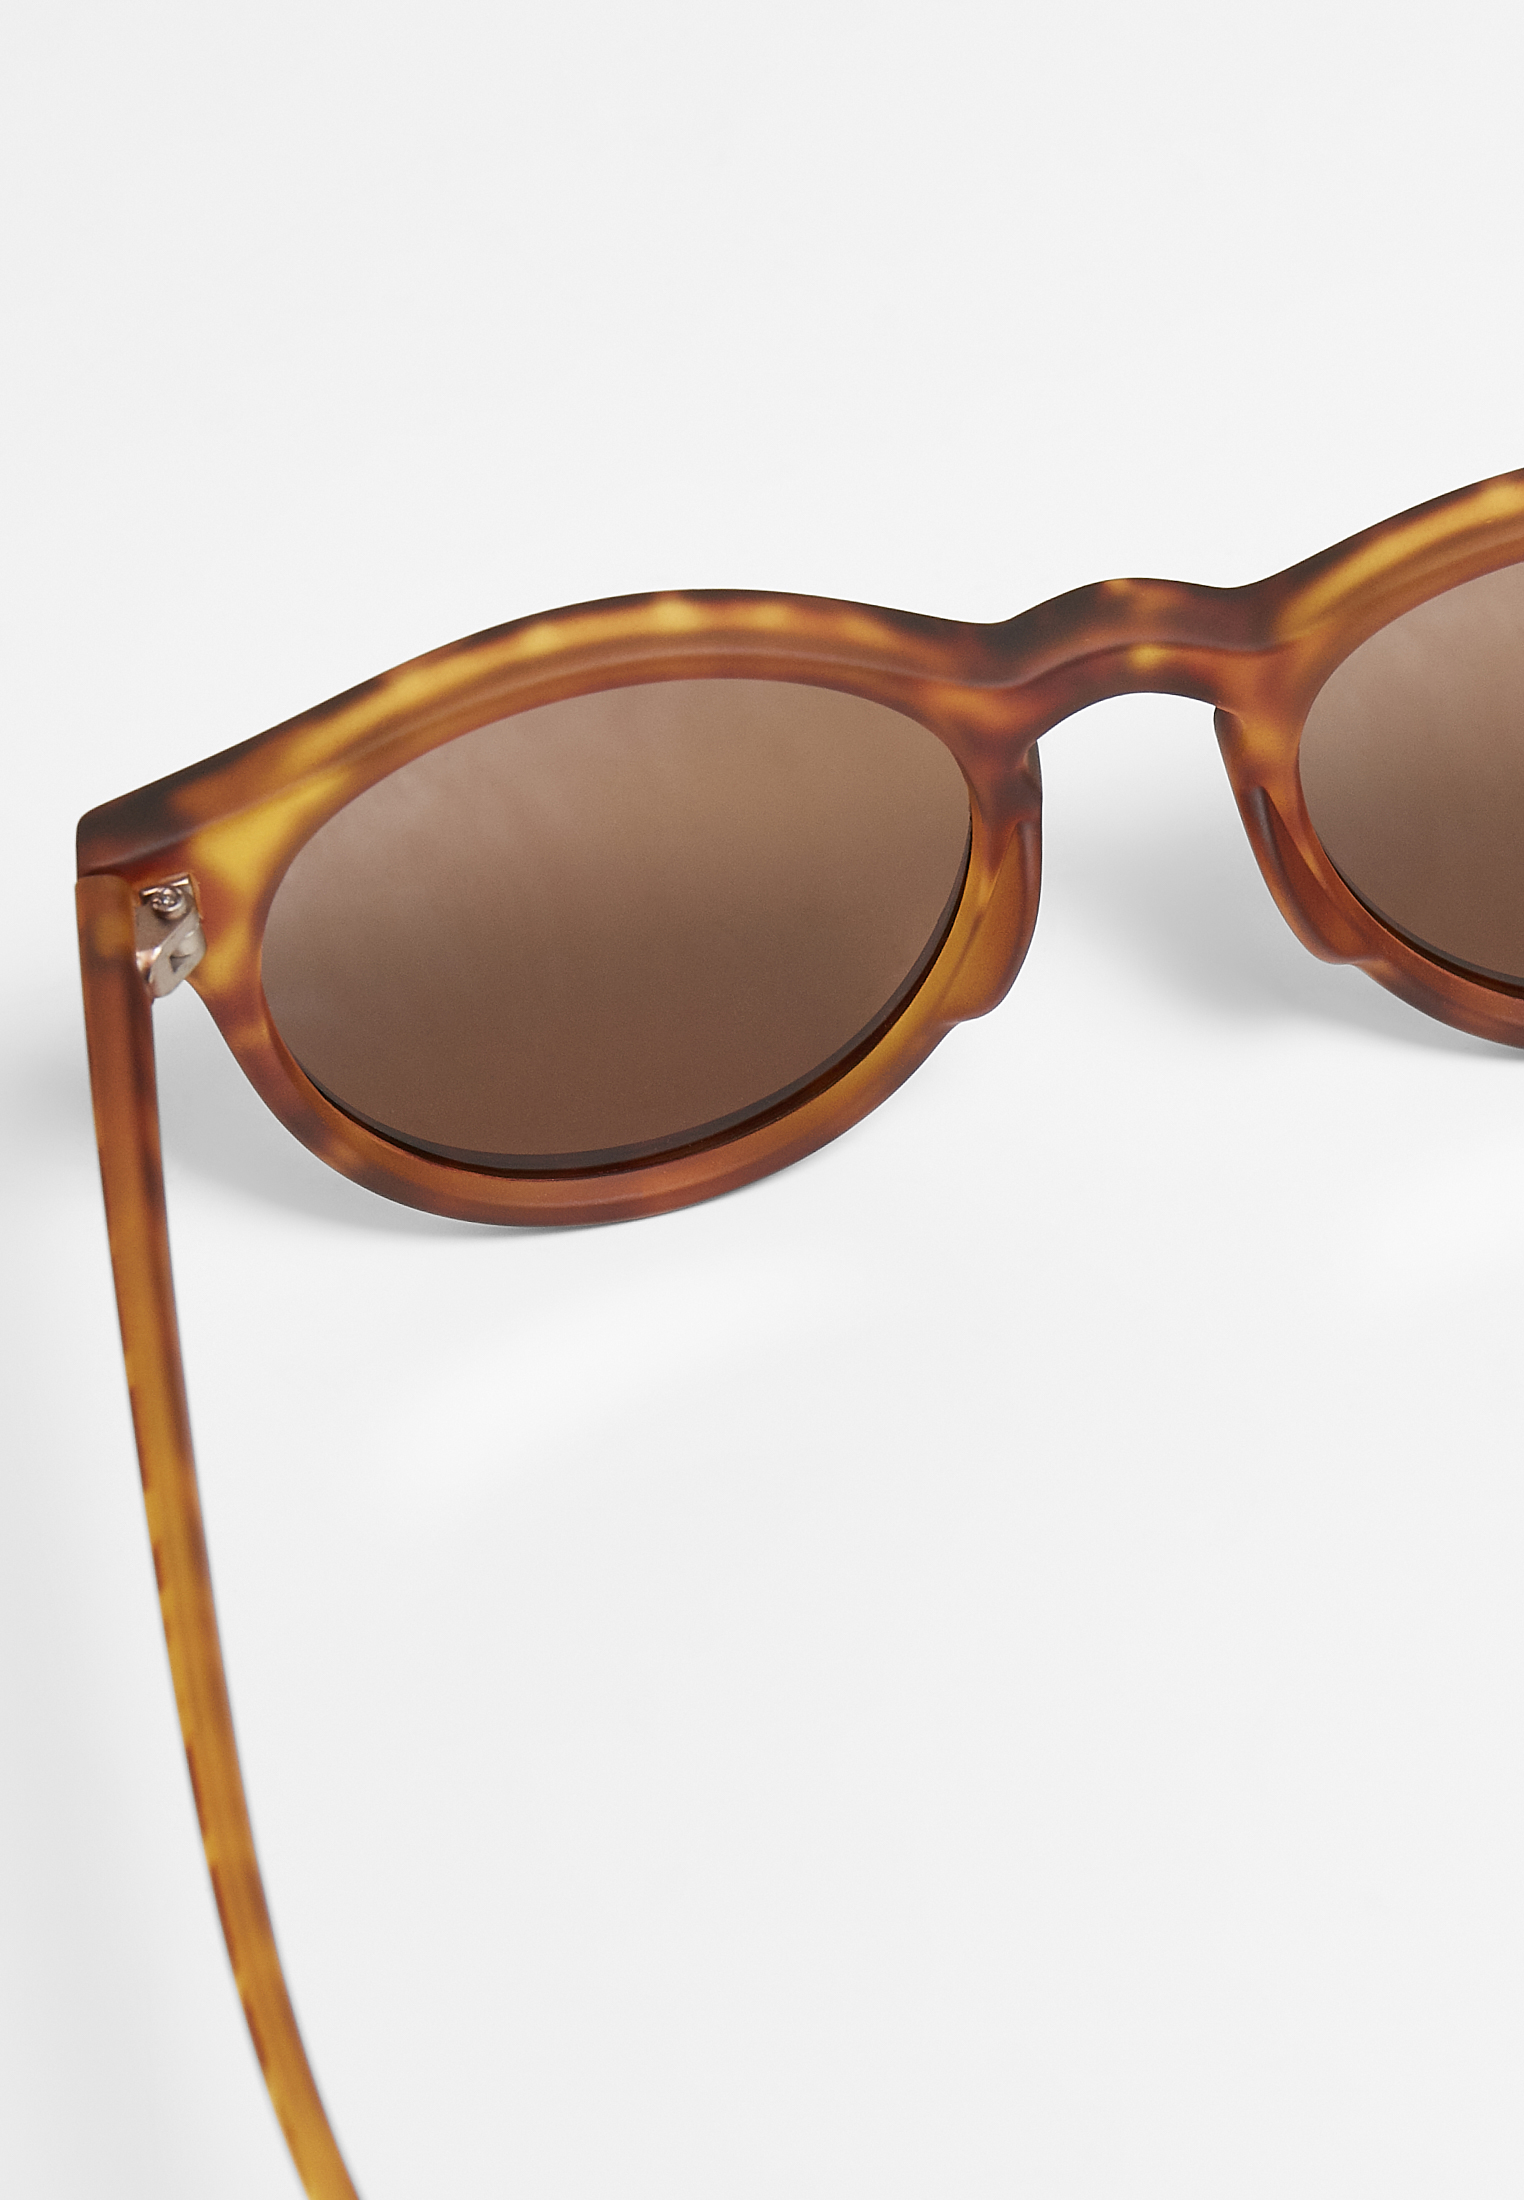 Sonnenbrillen Sunglasses Sunrise UC in Farbe brown leo/ros?